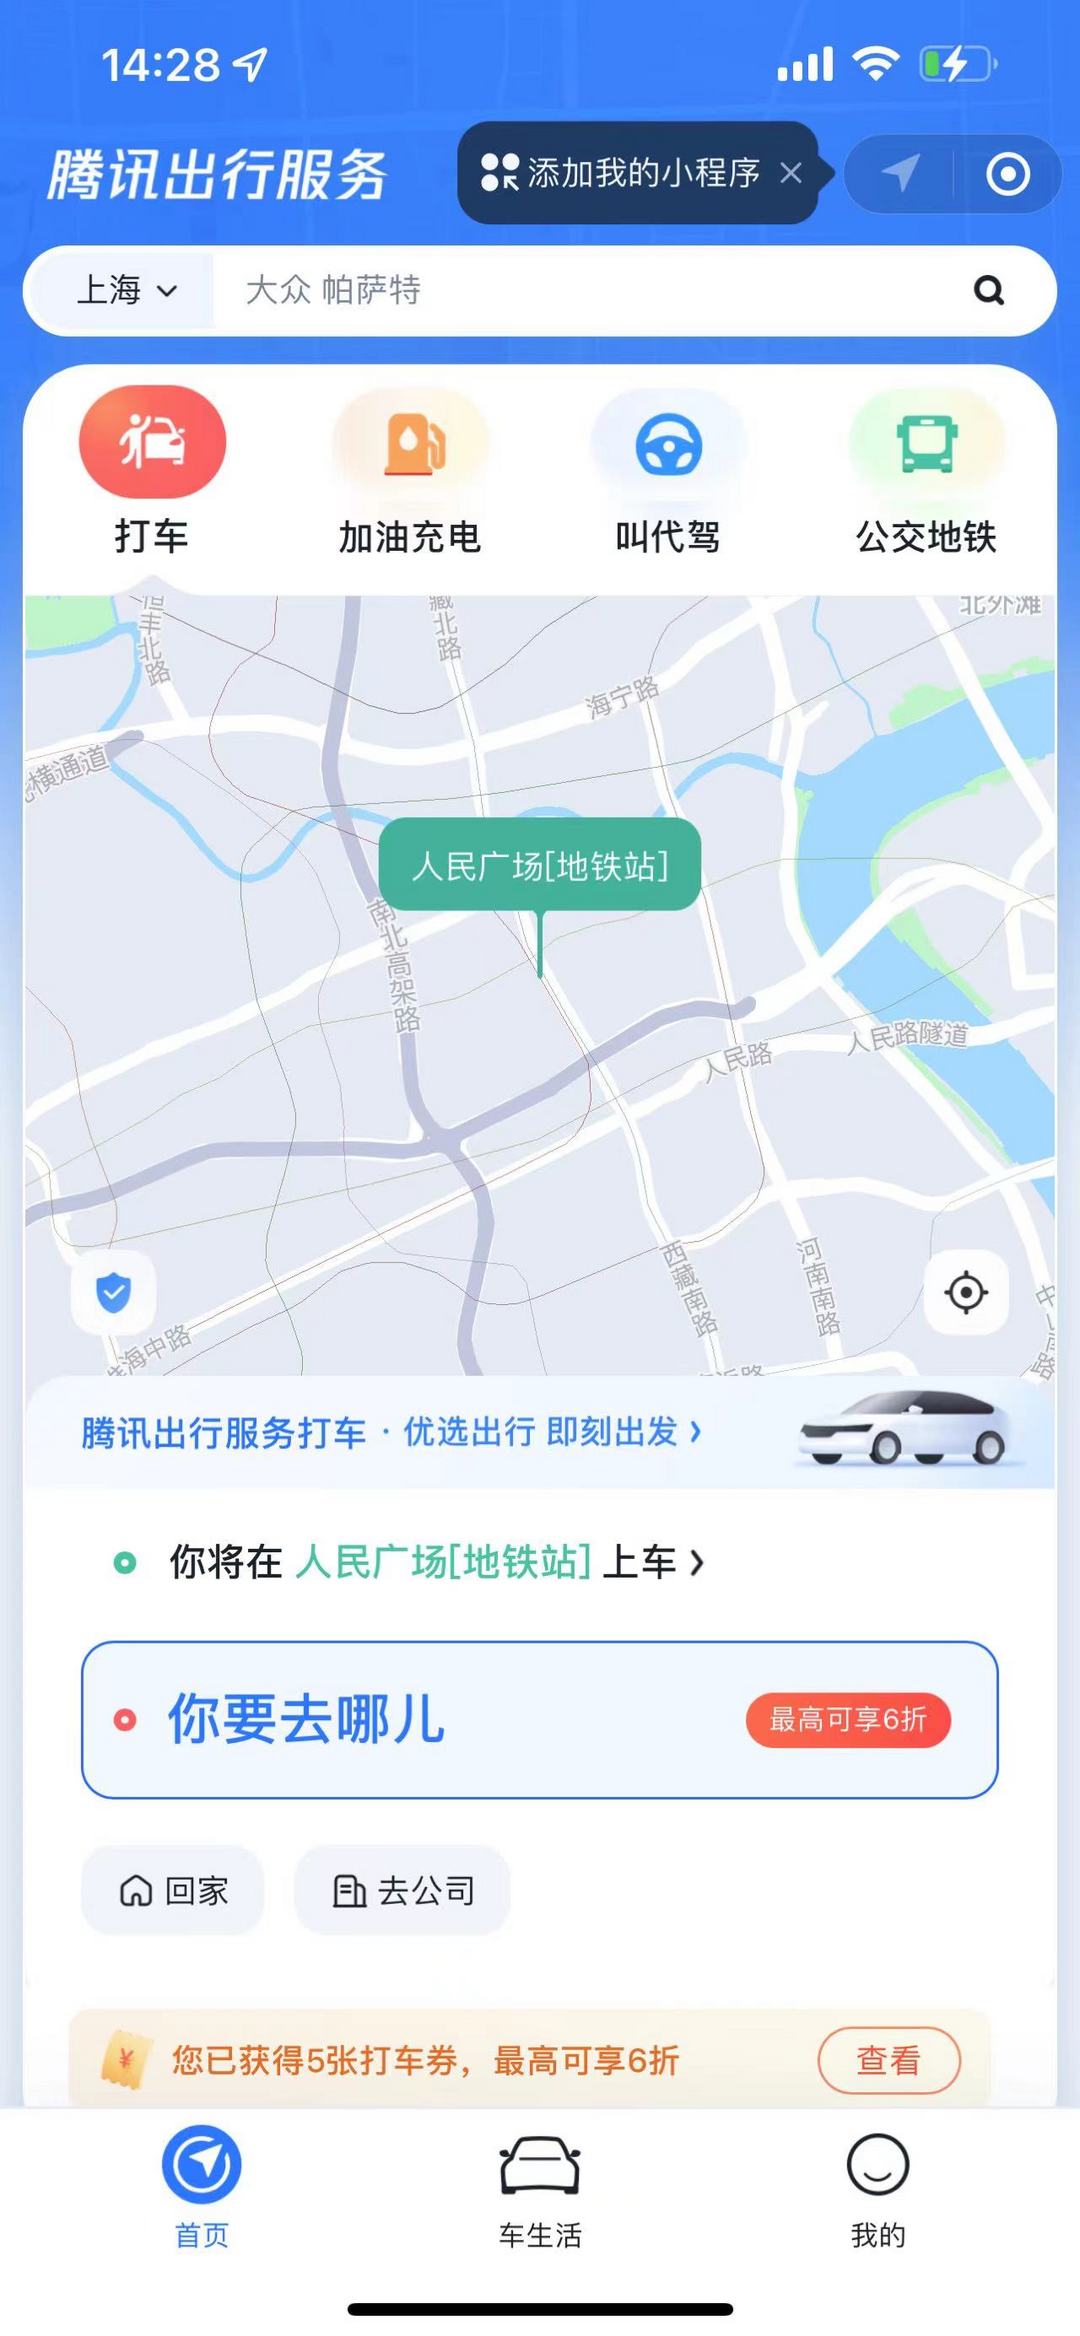 腾讯/华为入局网约车 市场规模呈现增长